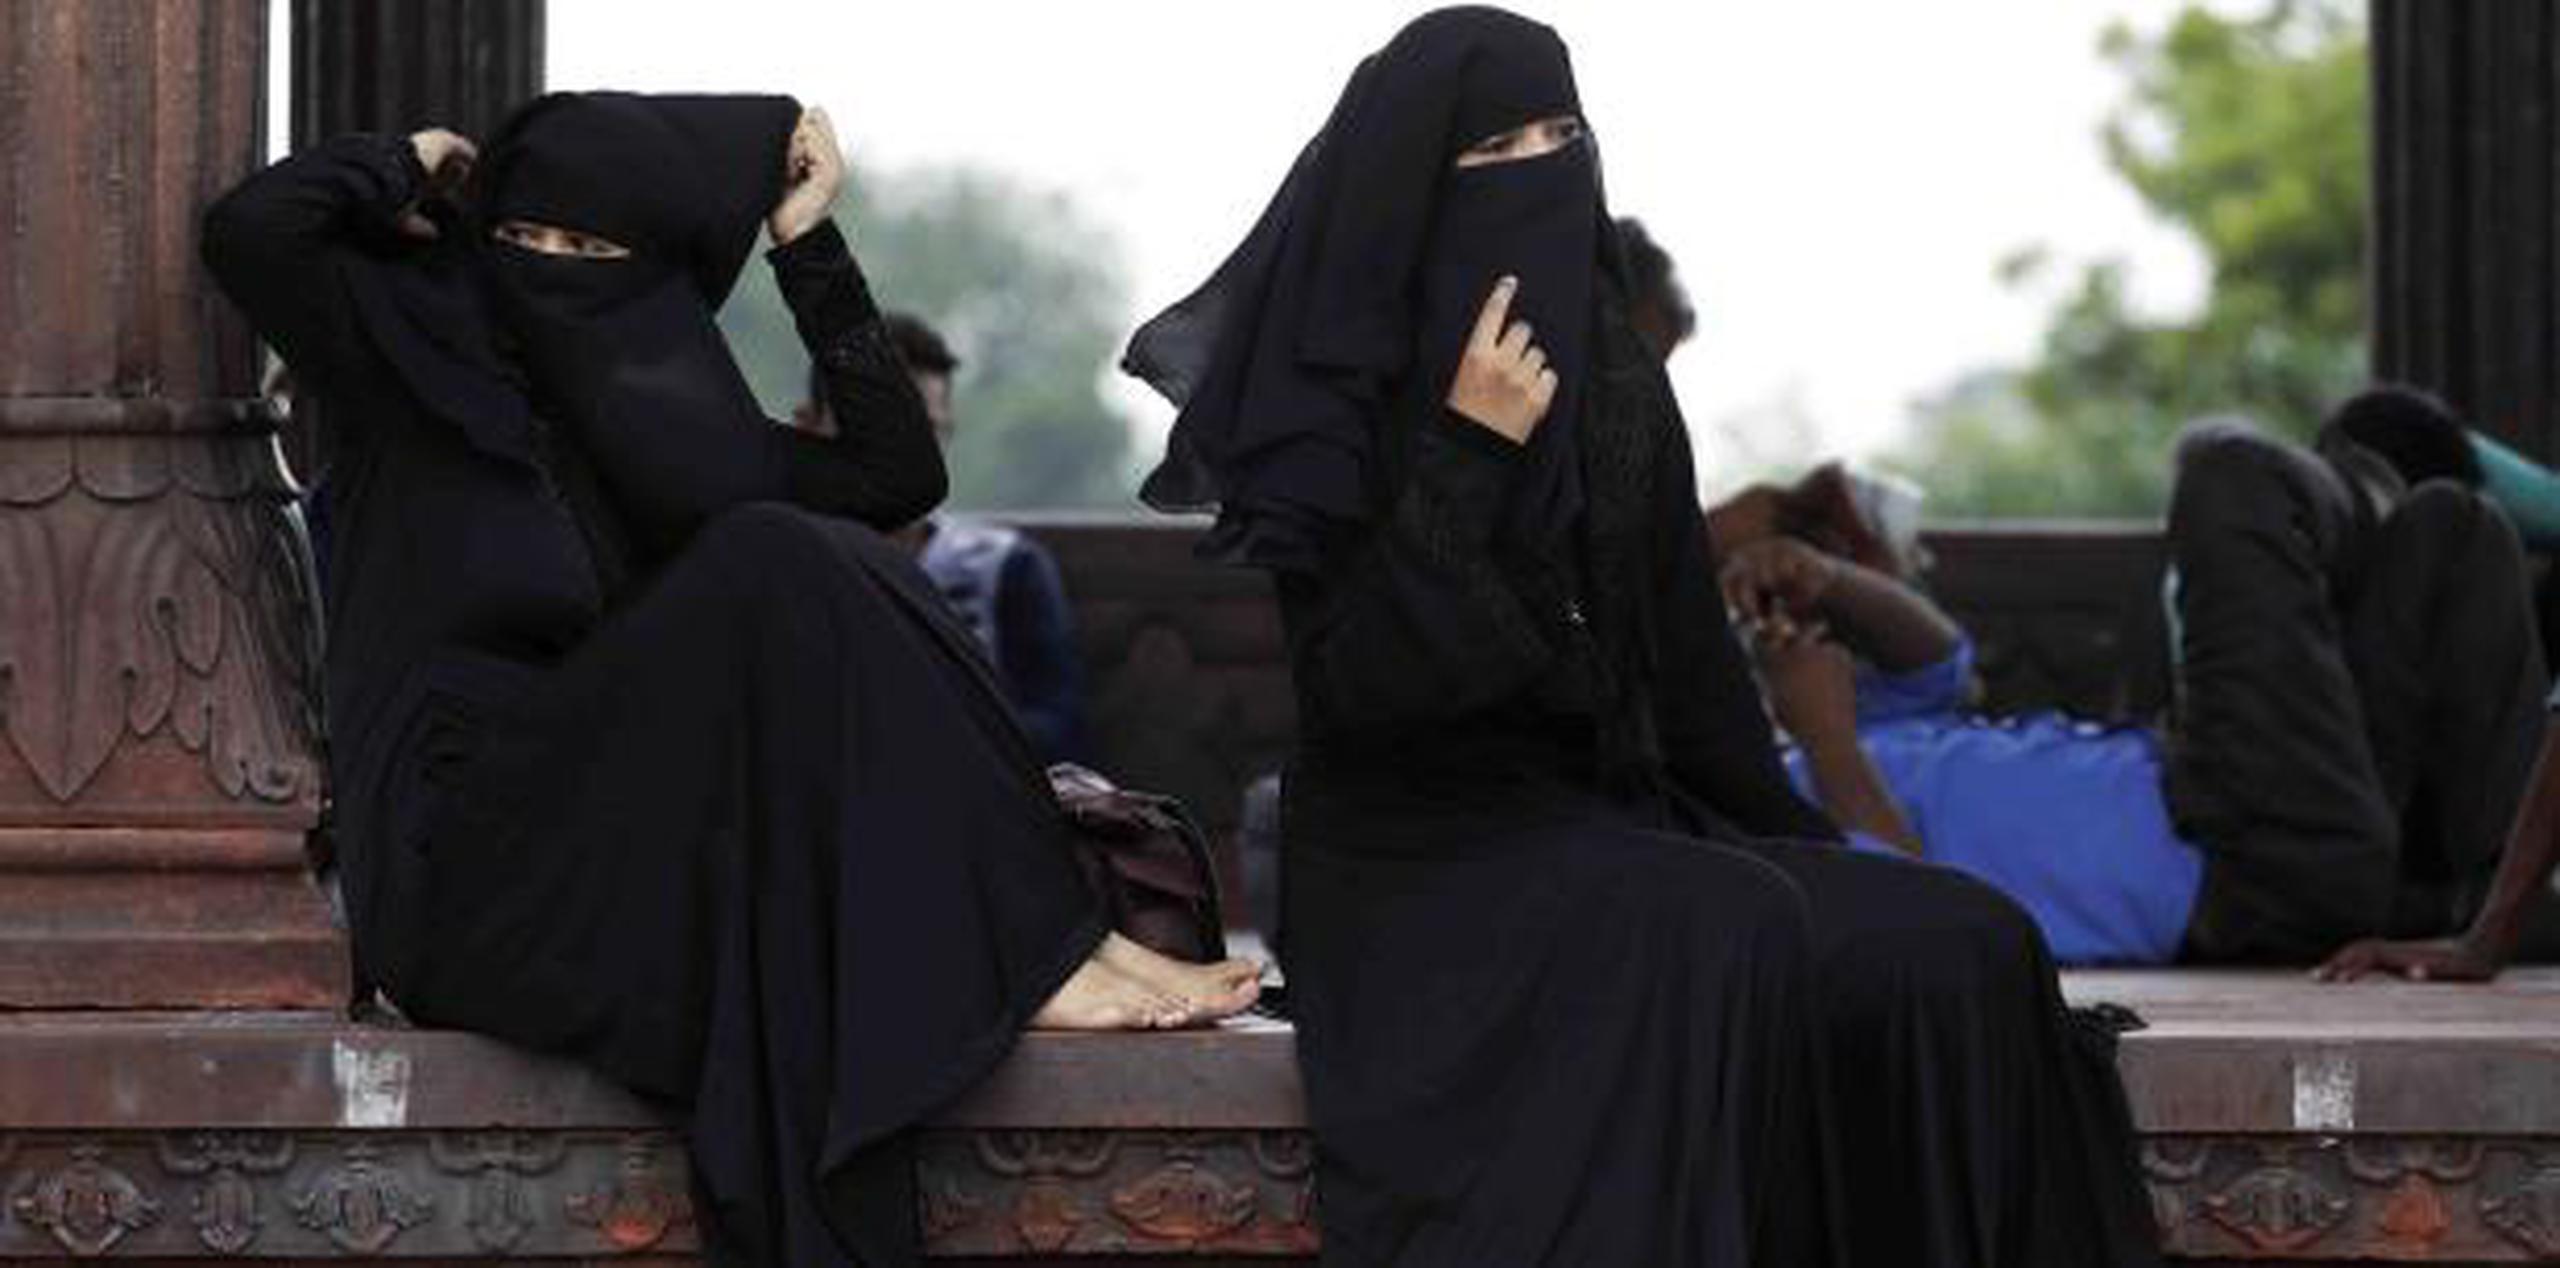 La Corte Suprema determinó que la práctica del "triple talaq" viola los derechos constitucionales de las mujeres musulmanas. (AP)